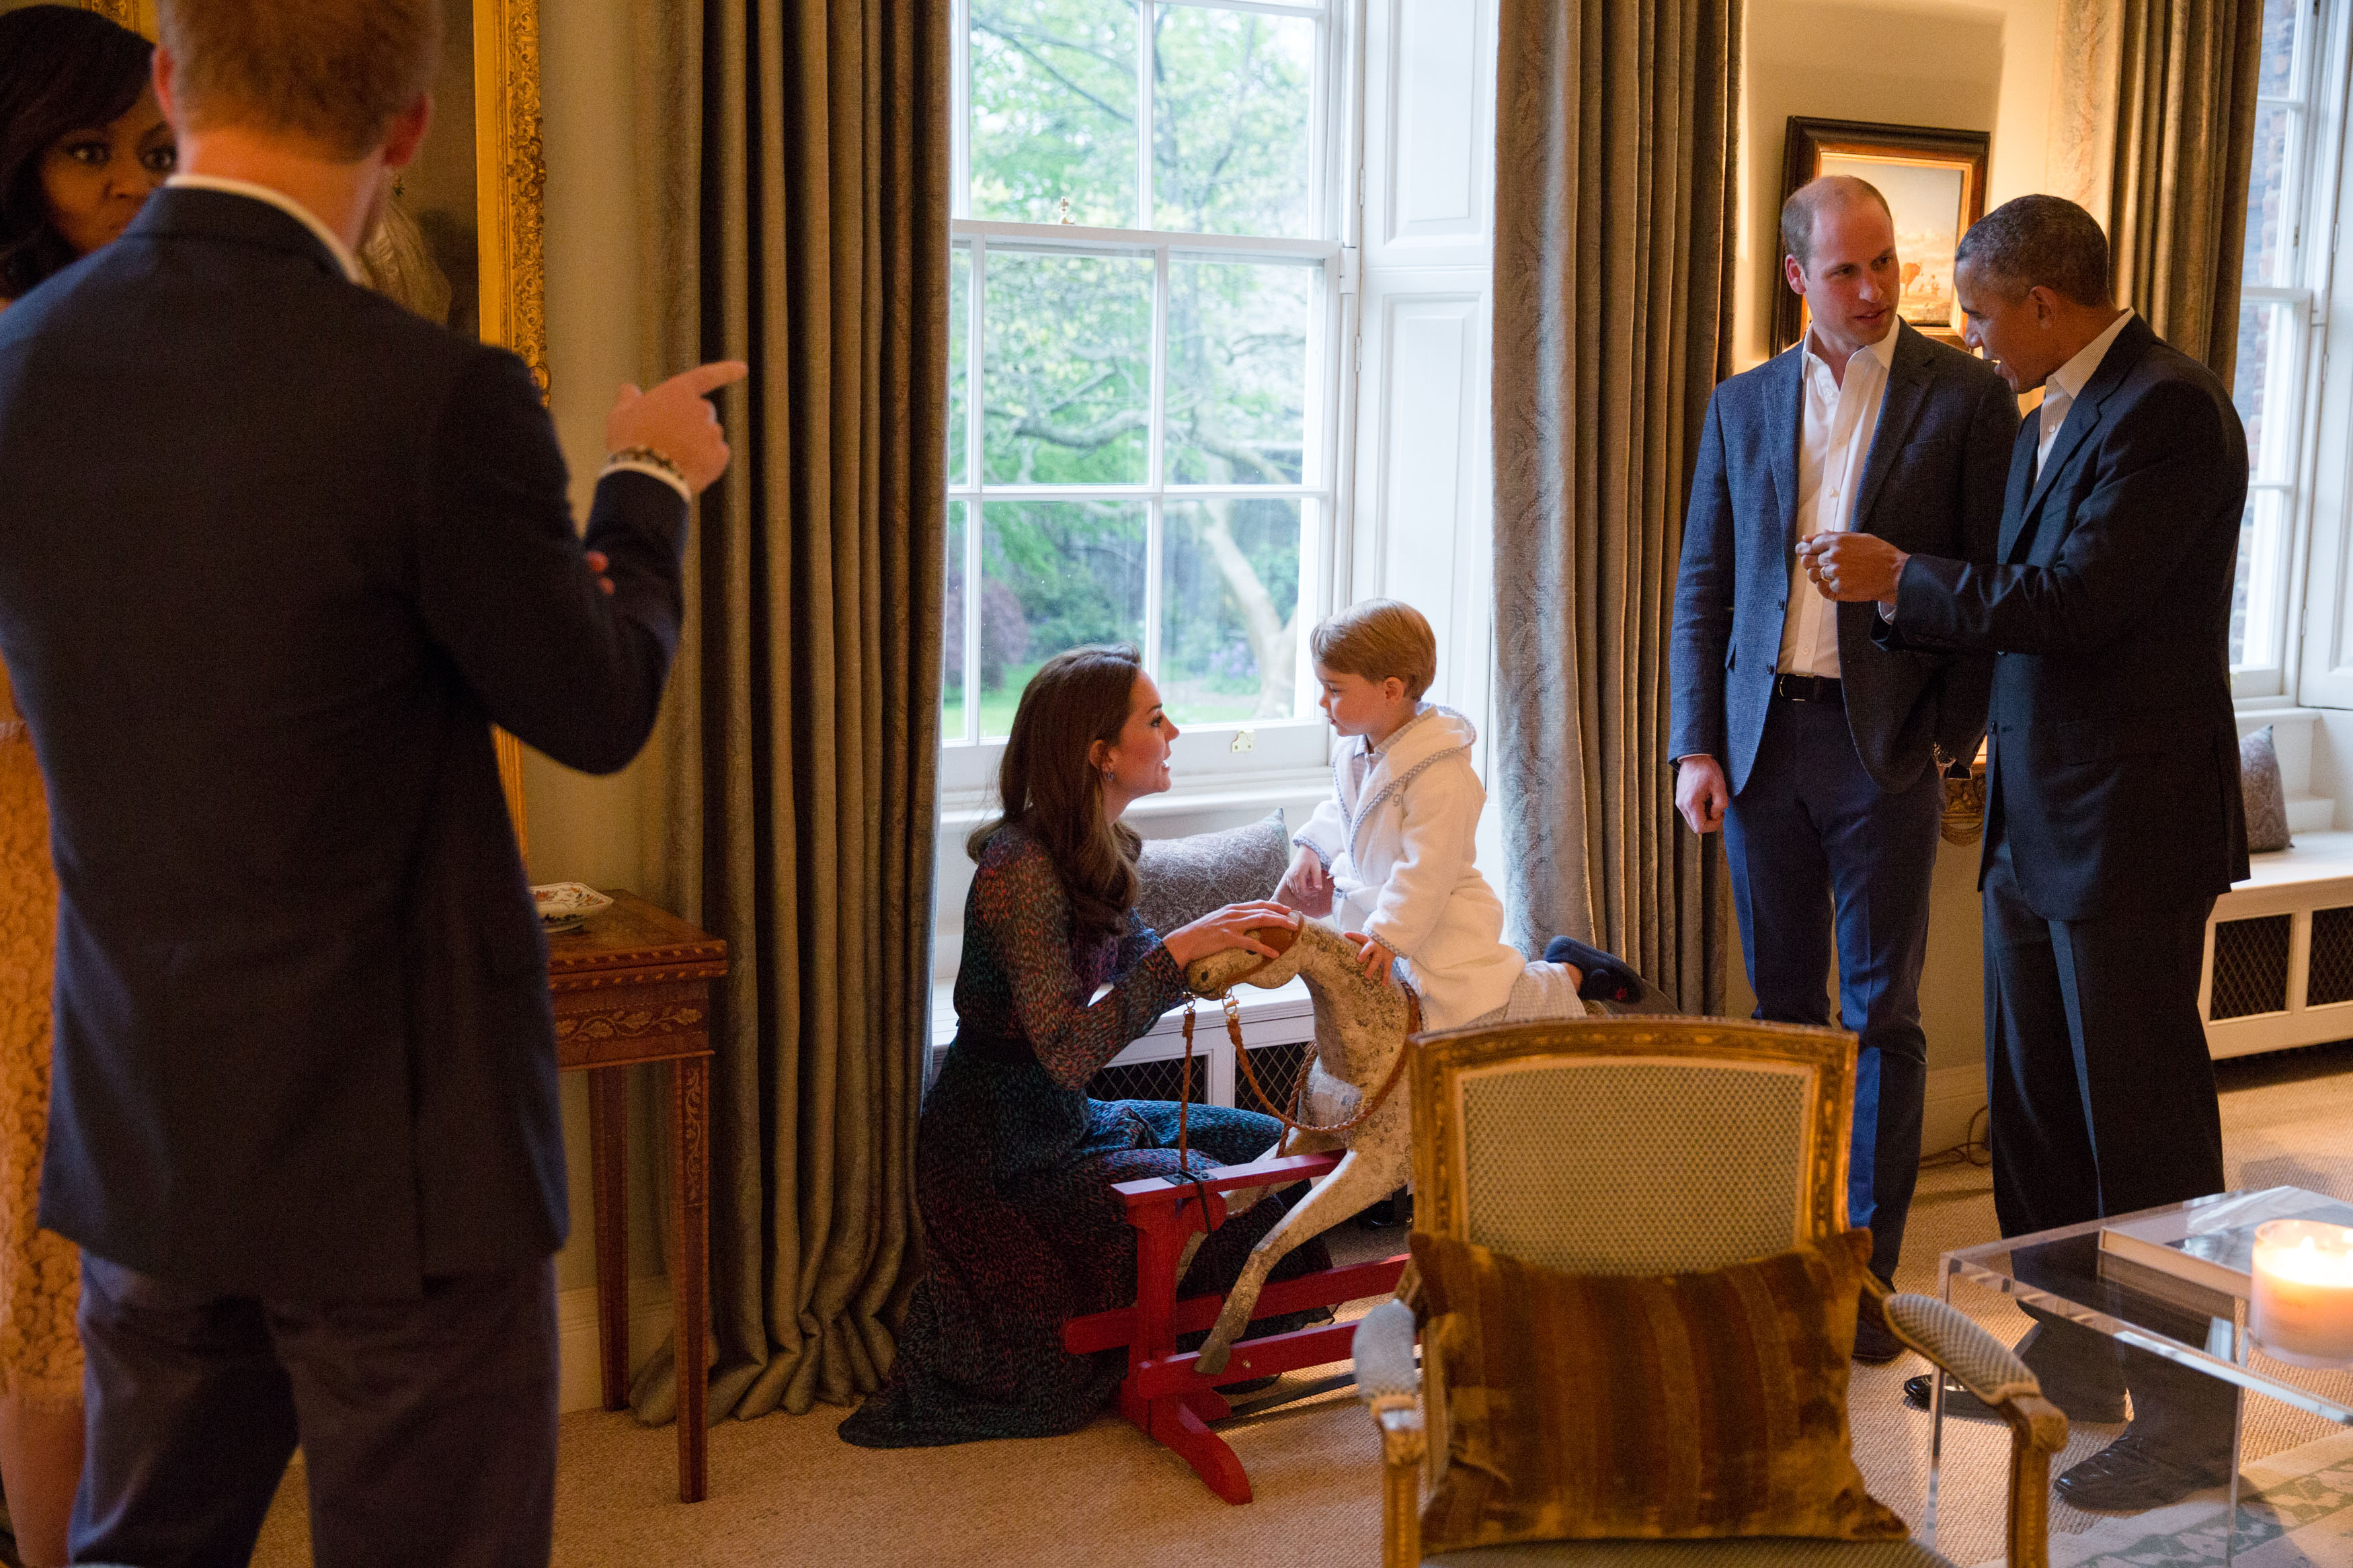 Meg kell zabálni! A kis György herceg pizsamában fogadta az amerikai  elnököt - fotók - Blikk